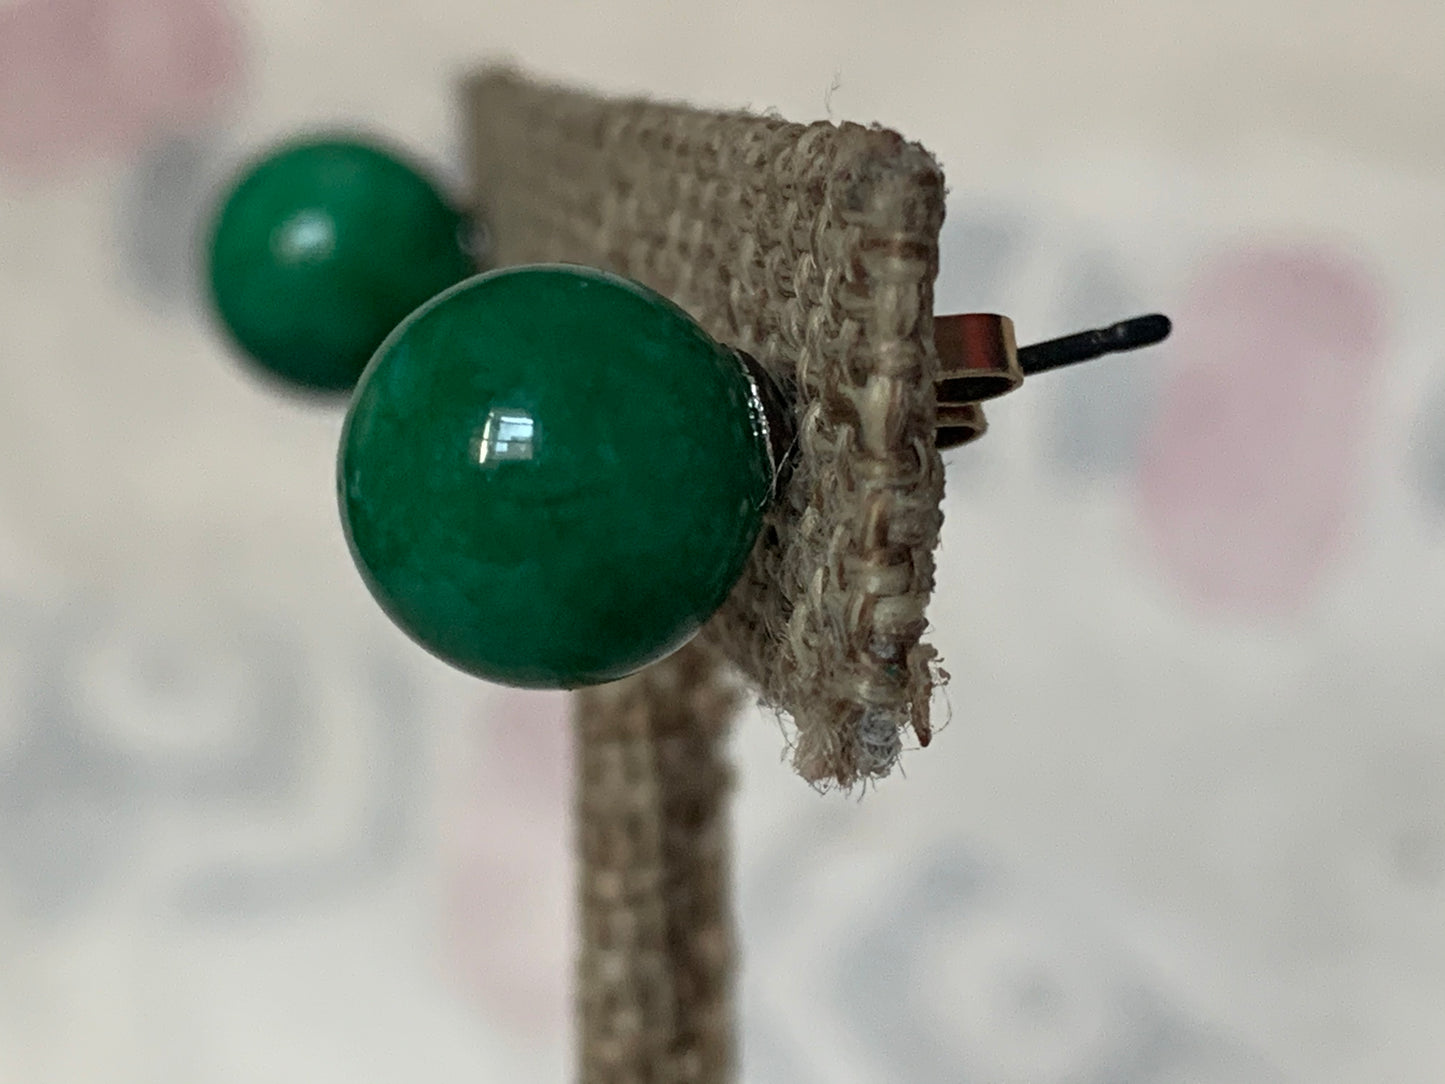 A pair of jade stud earrings